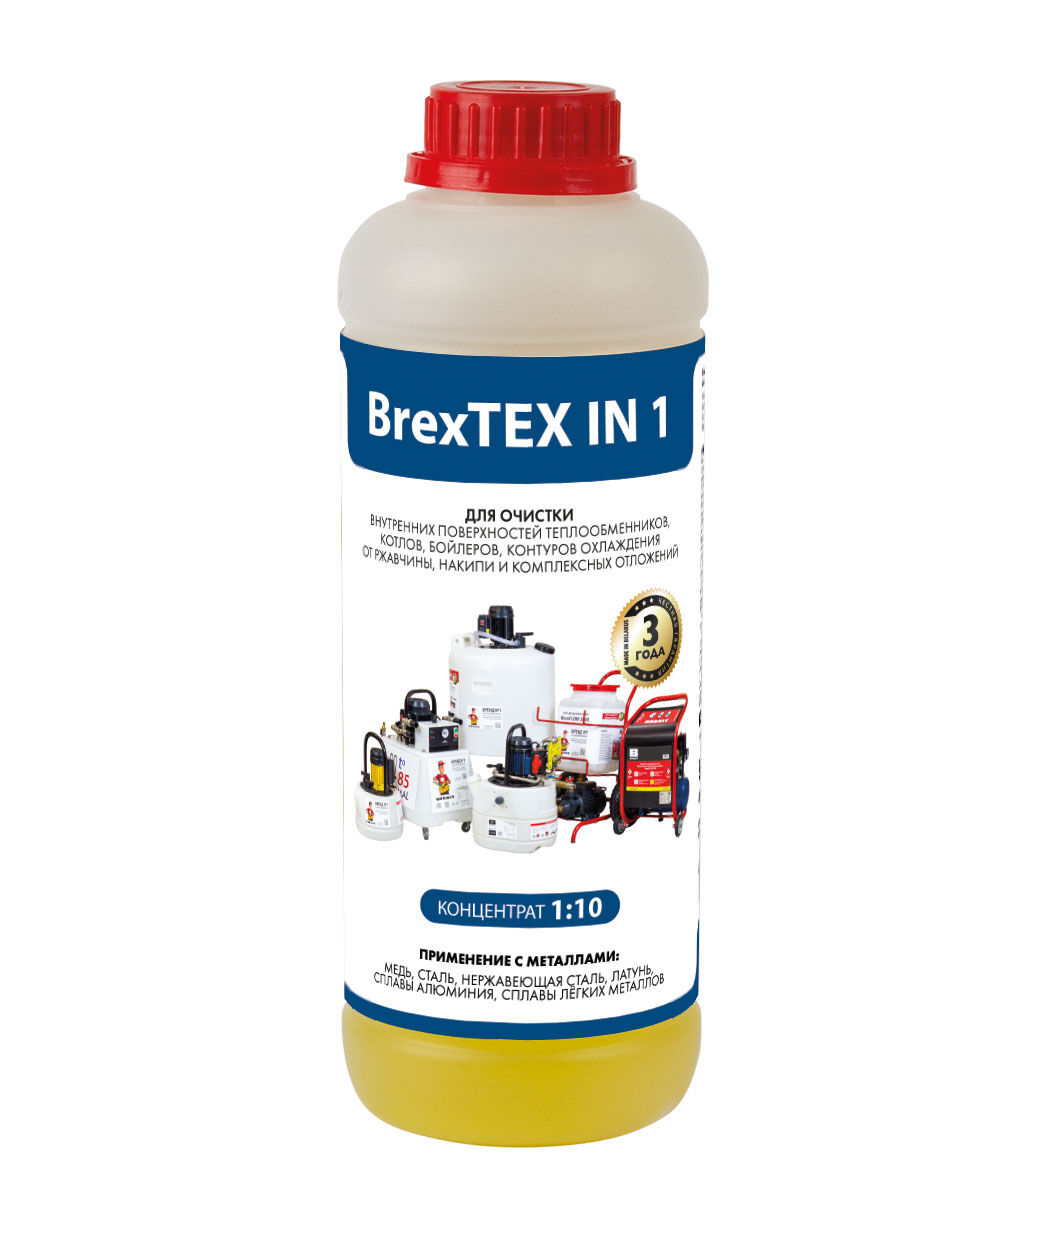 Реагент для очистки теплообменного и отопительного оборудования BrexTEX IN 1 brexit